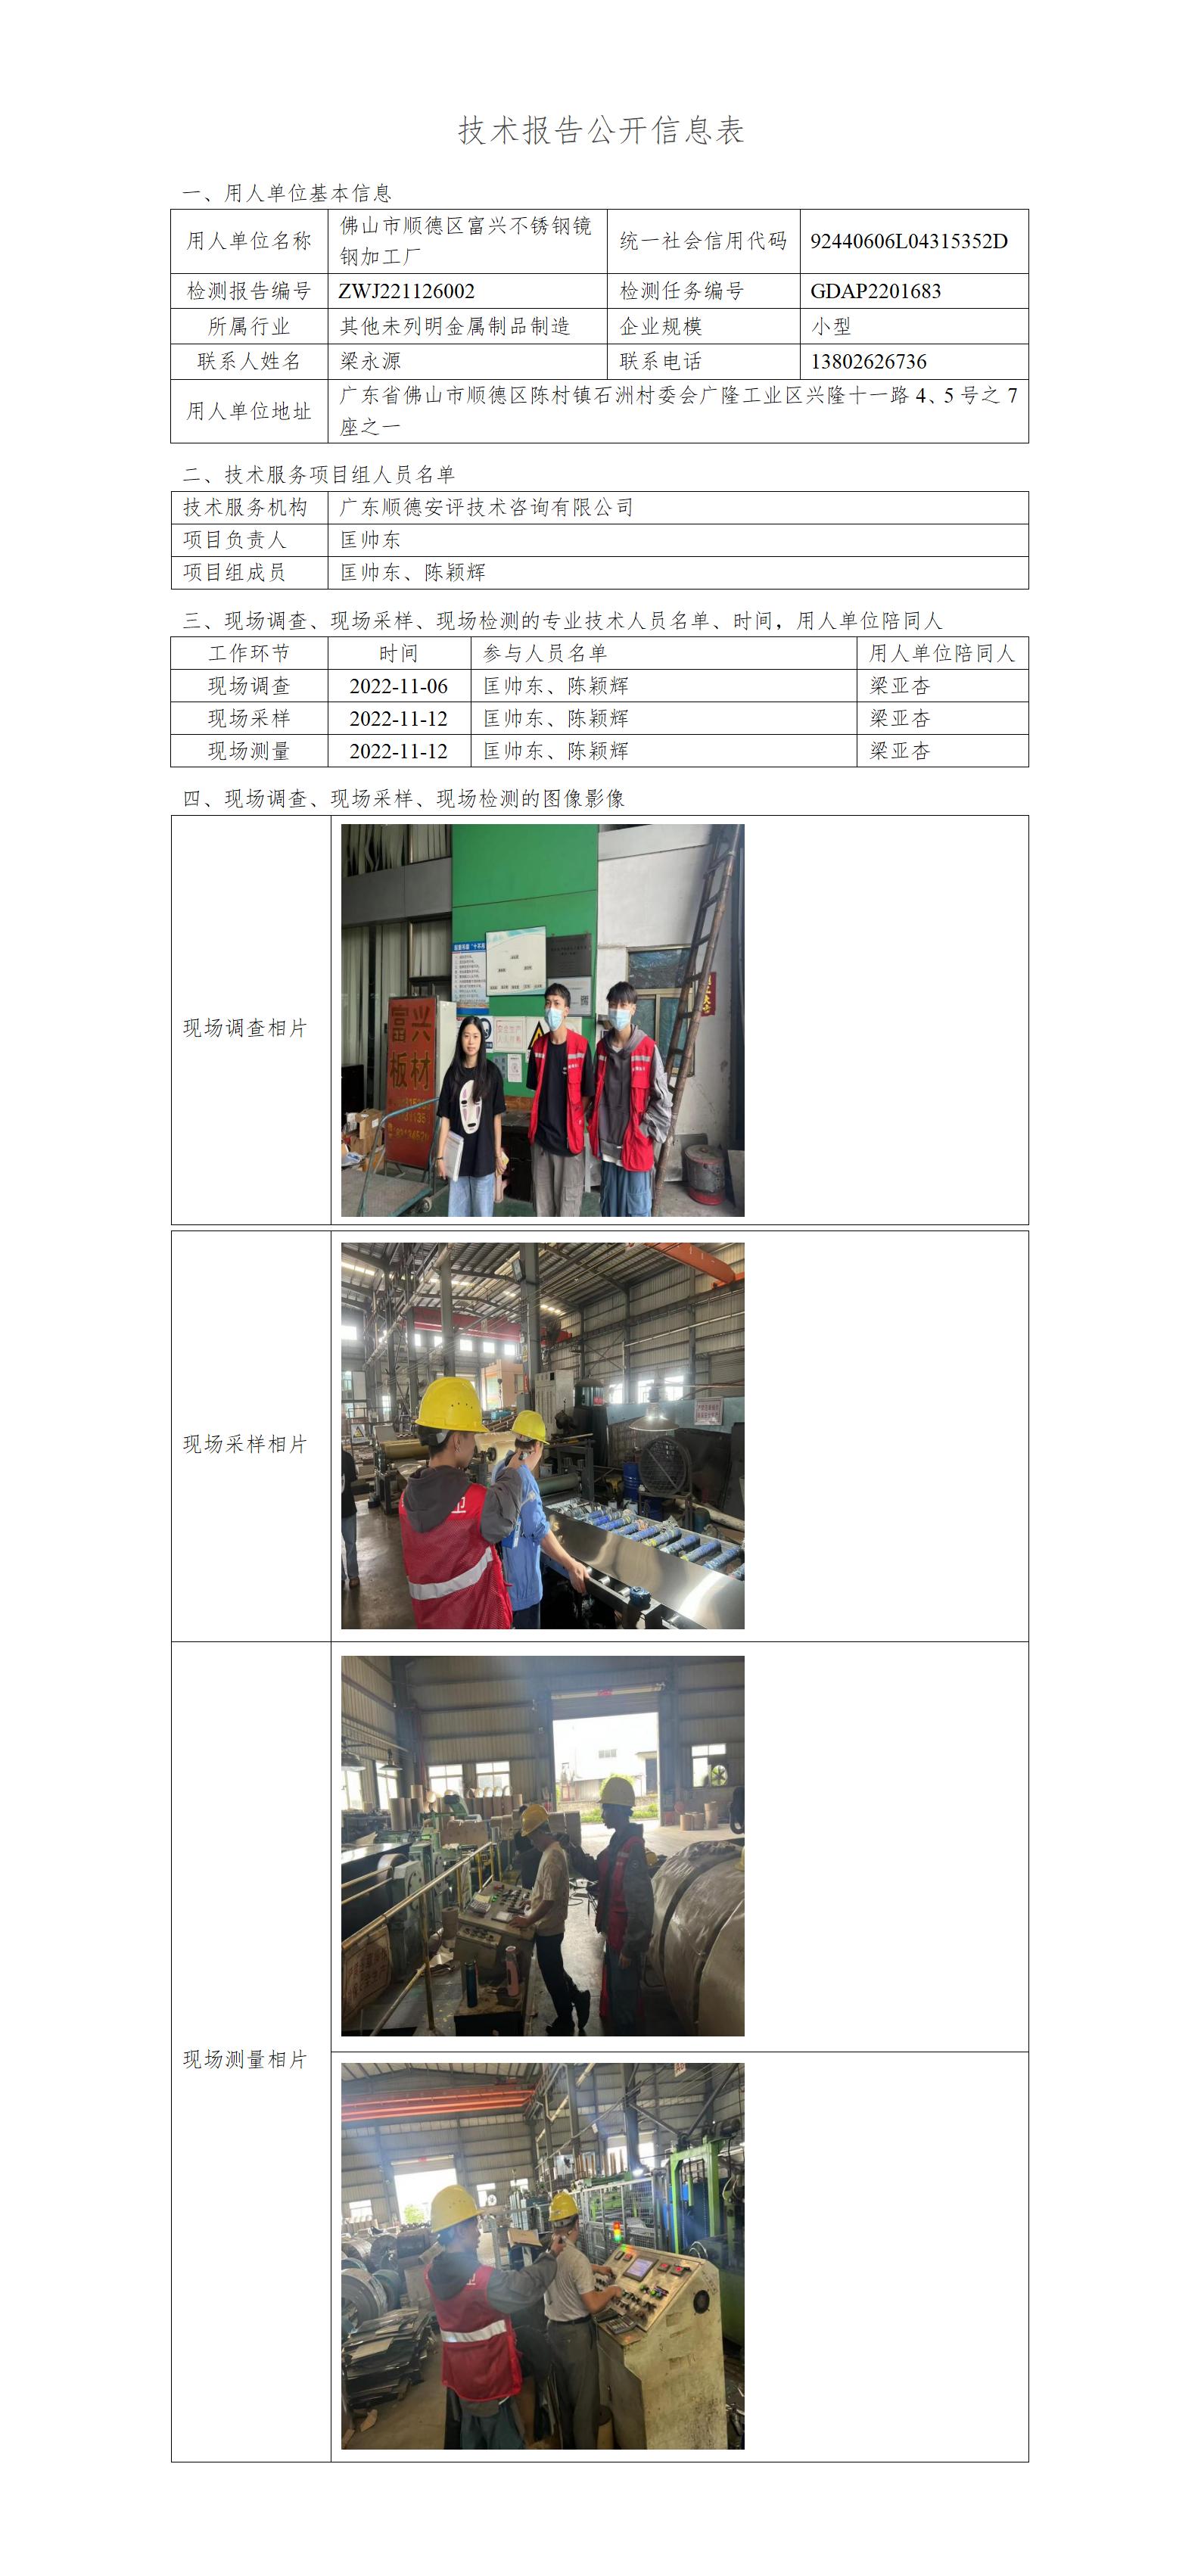 佛山市顺德区富兴不锈钢镜钢加工厂-2022-技术报告公开信息表_01.jpg